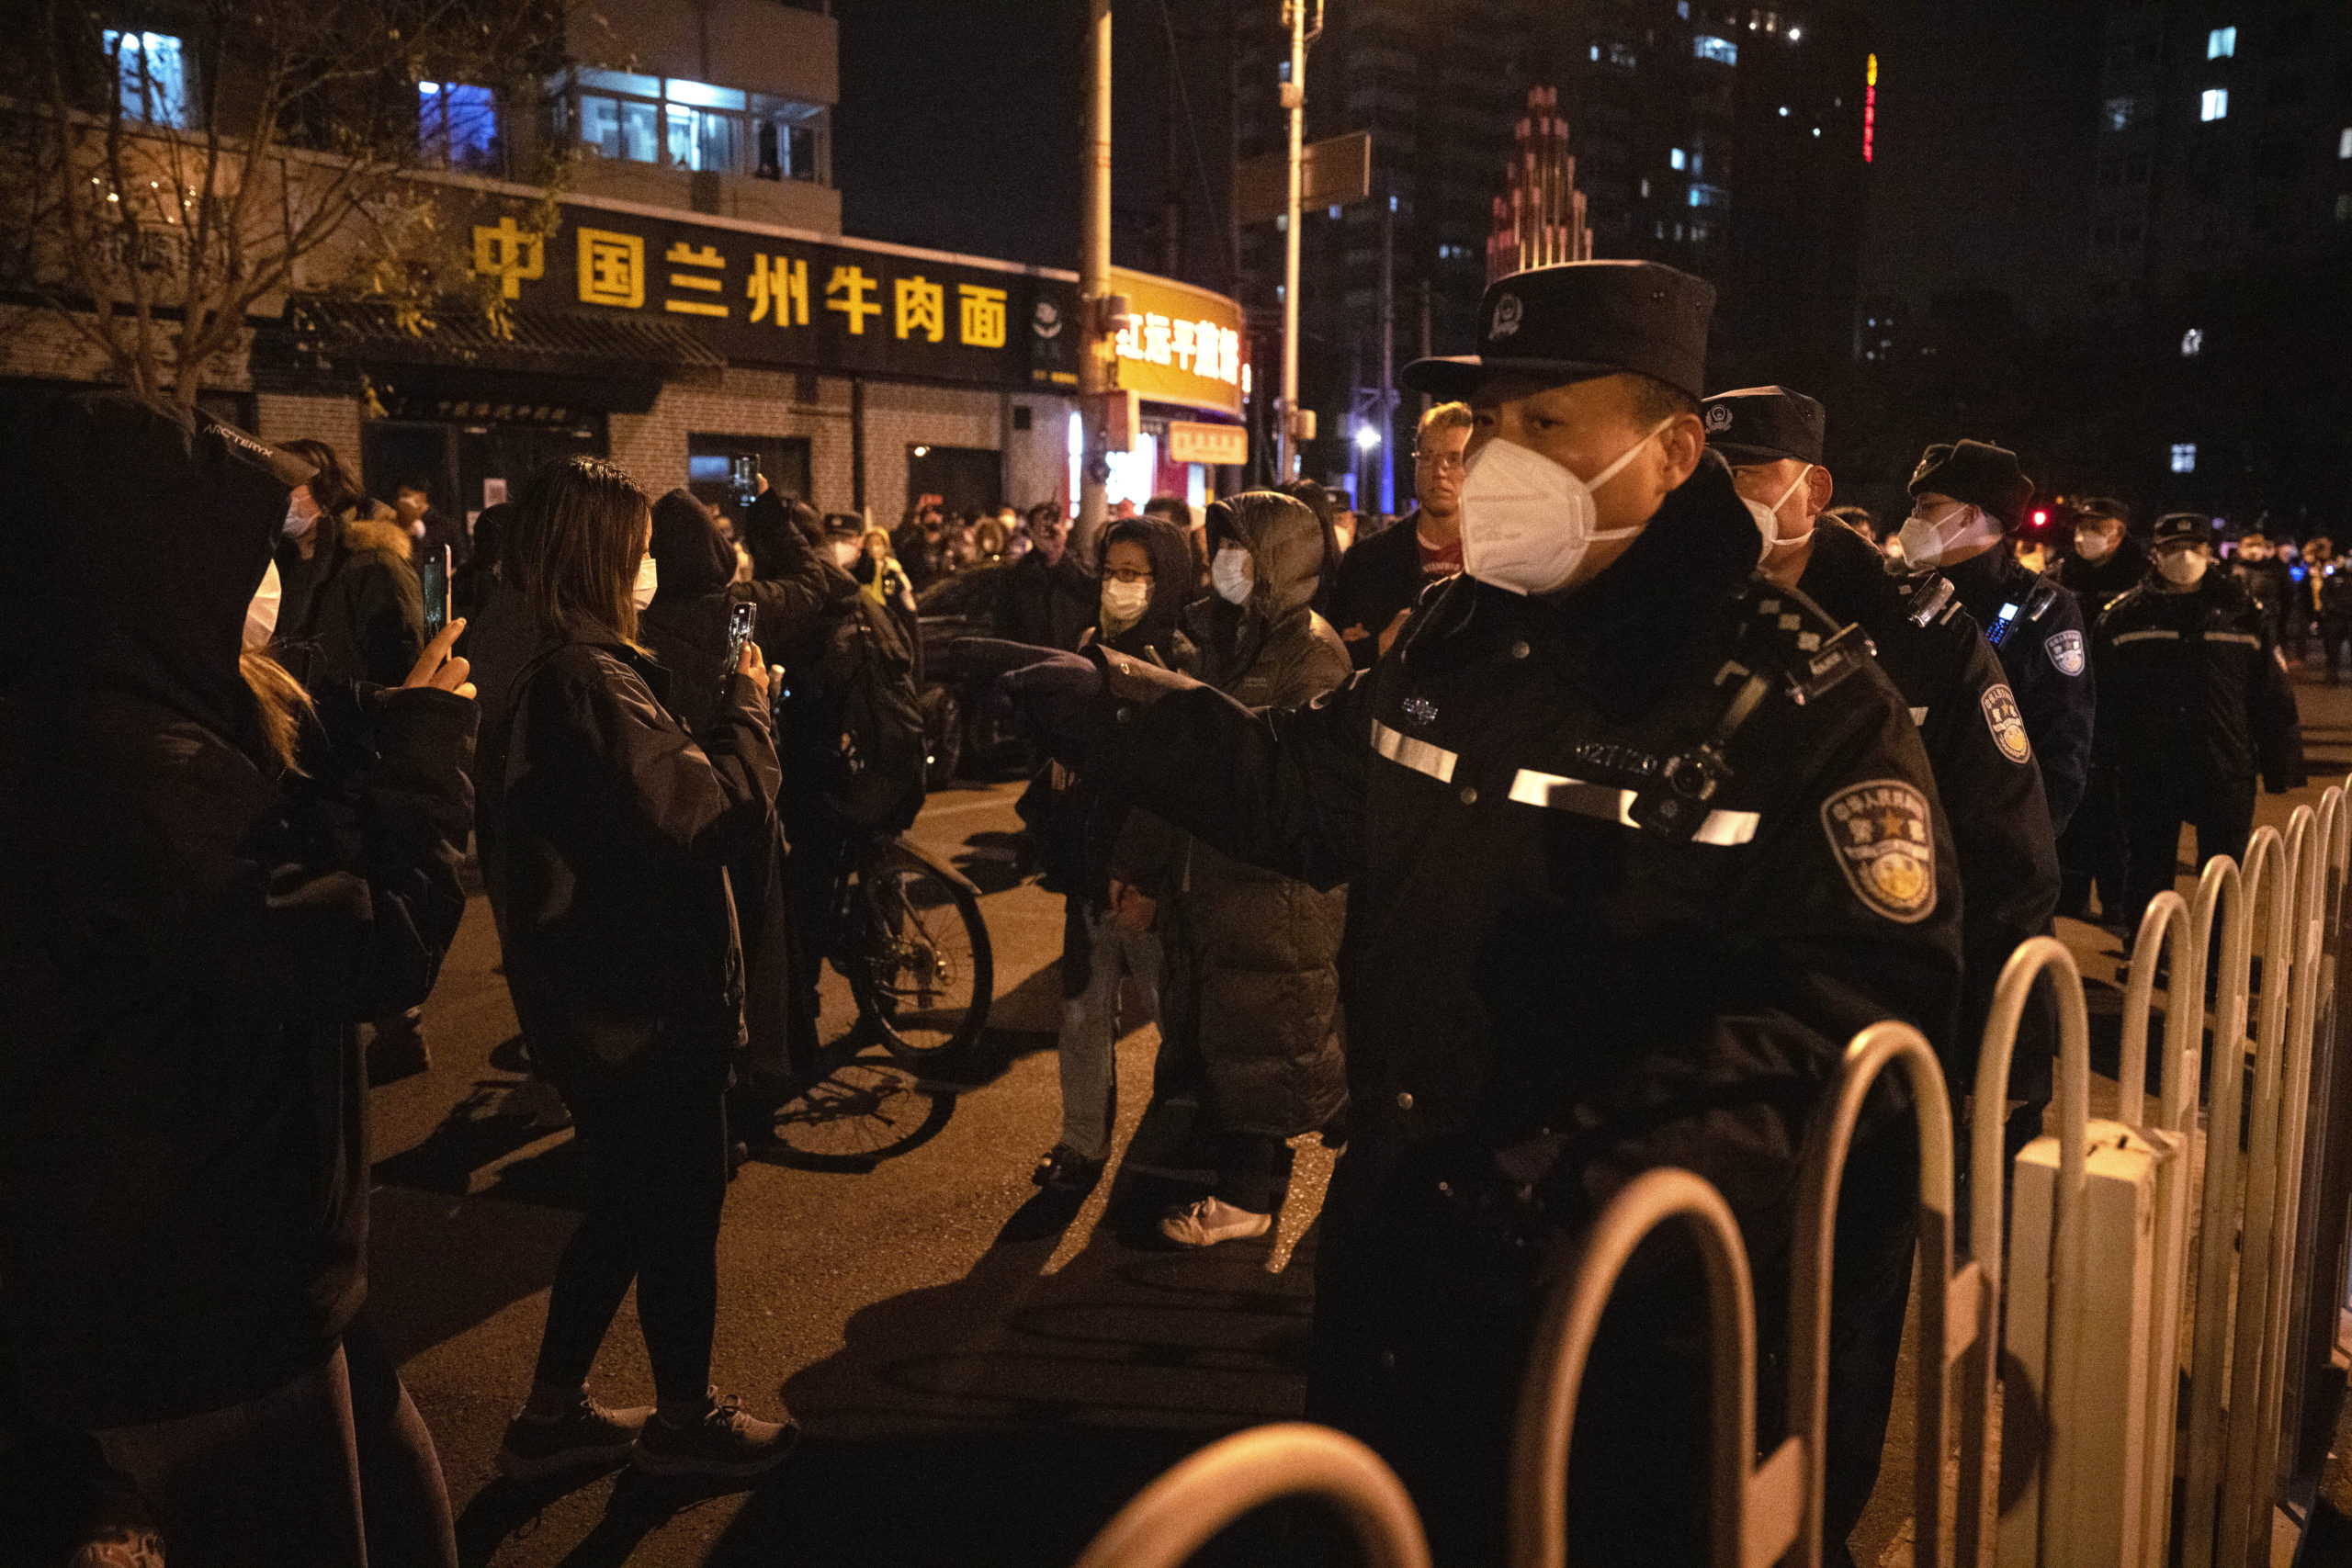 Συνεχίζεται το κύμα αγανάκτησης στην Κίνα – Στο επίκεντρο η σύλληψη του Βρετανού δημοσιογράφου